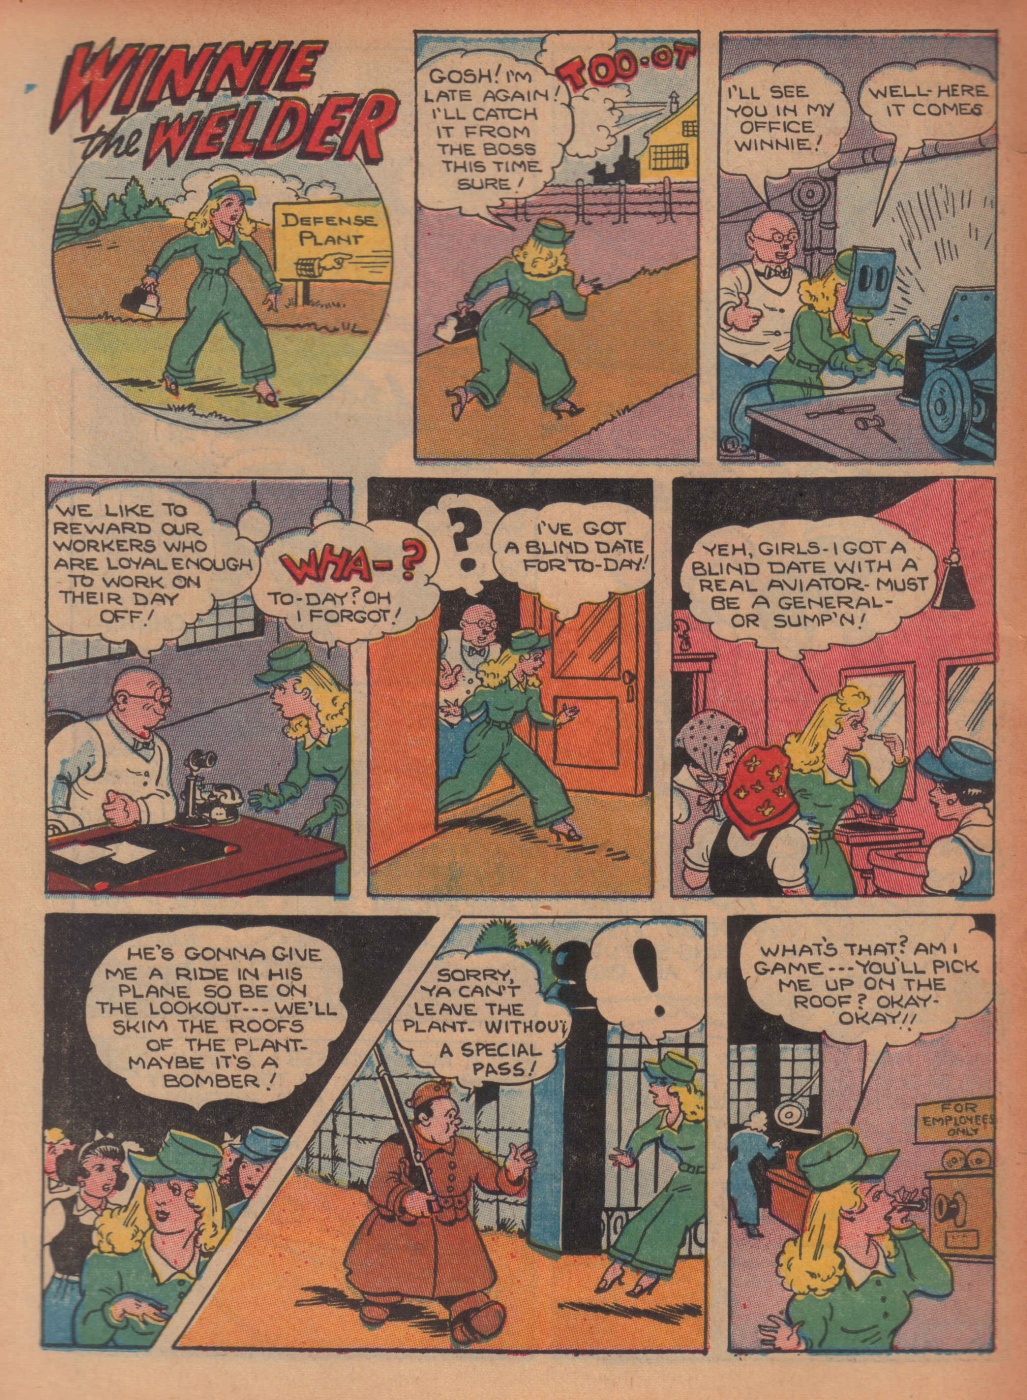 Super Dooper Funny Comics (30)